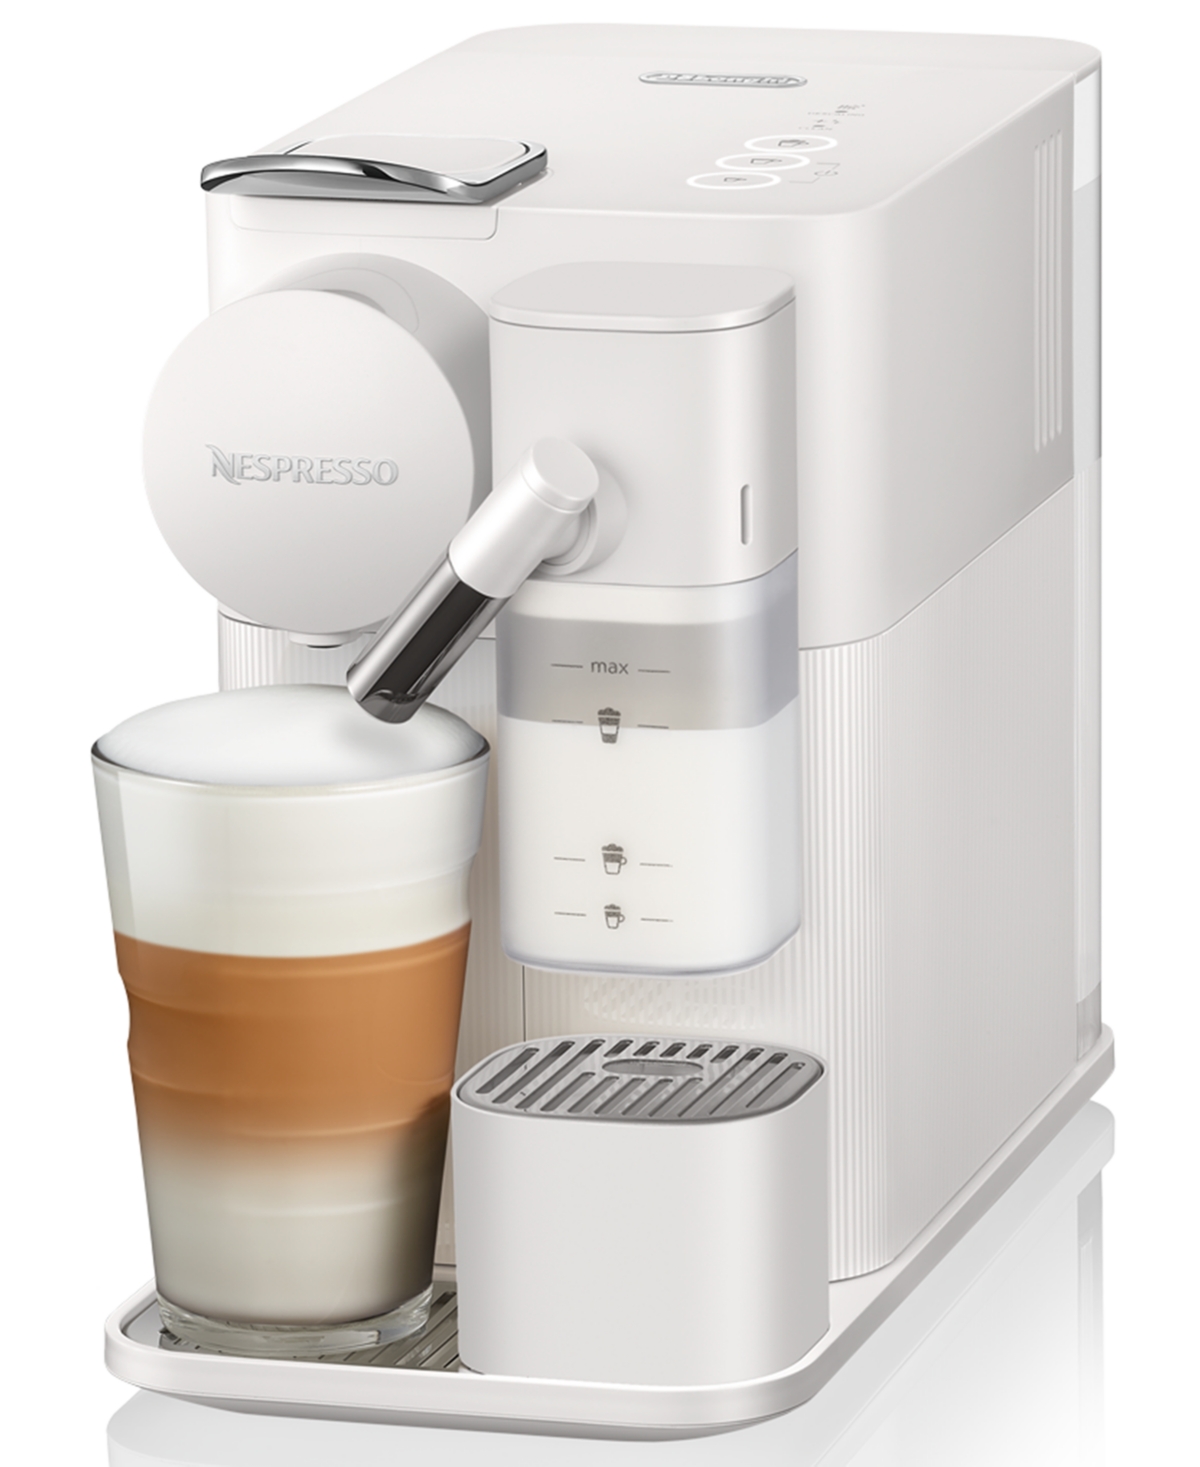 Nespresso Lattissima Espresso Machine by DeLonghi & - Coffee Makers - Kitchen - Macy's